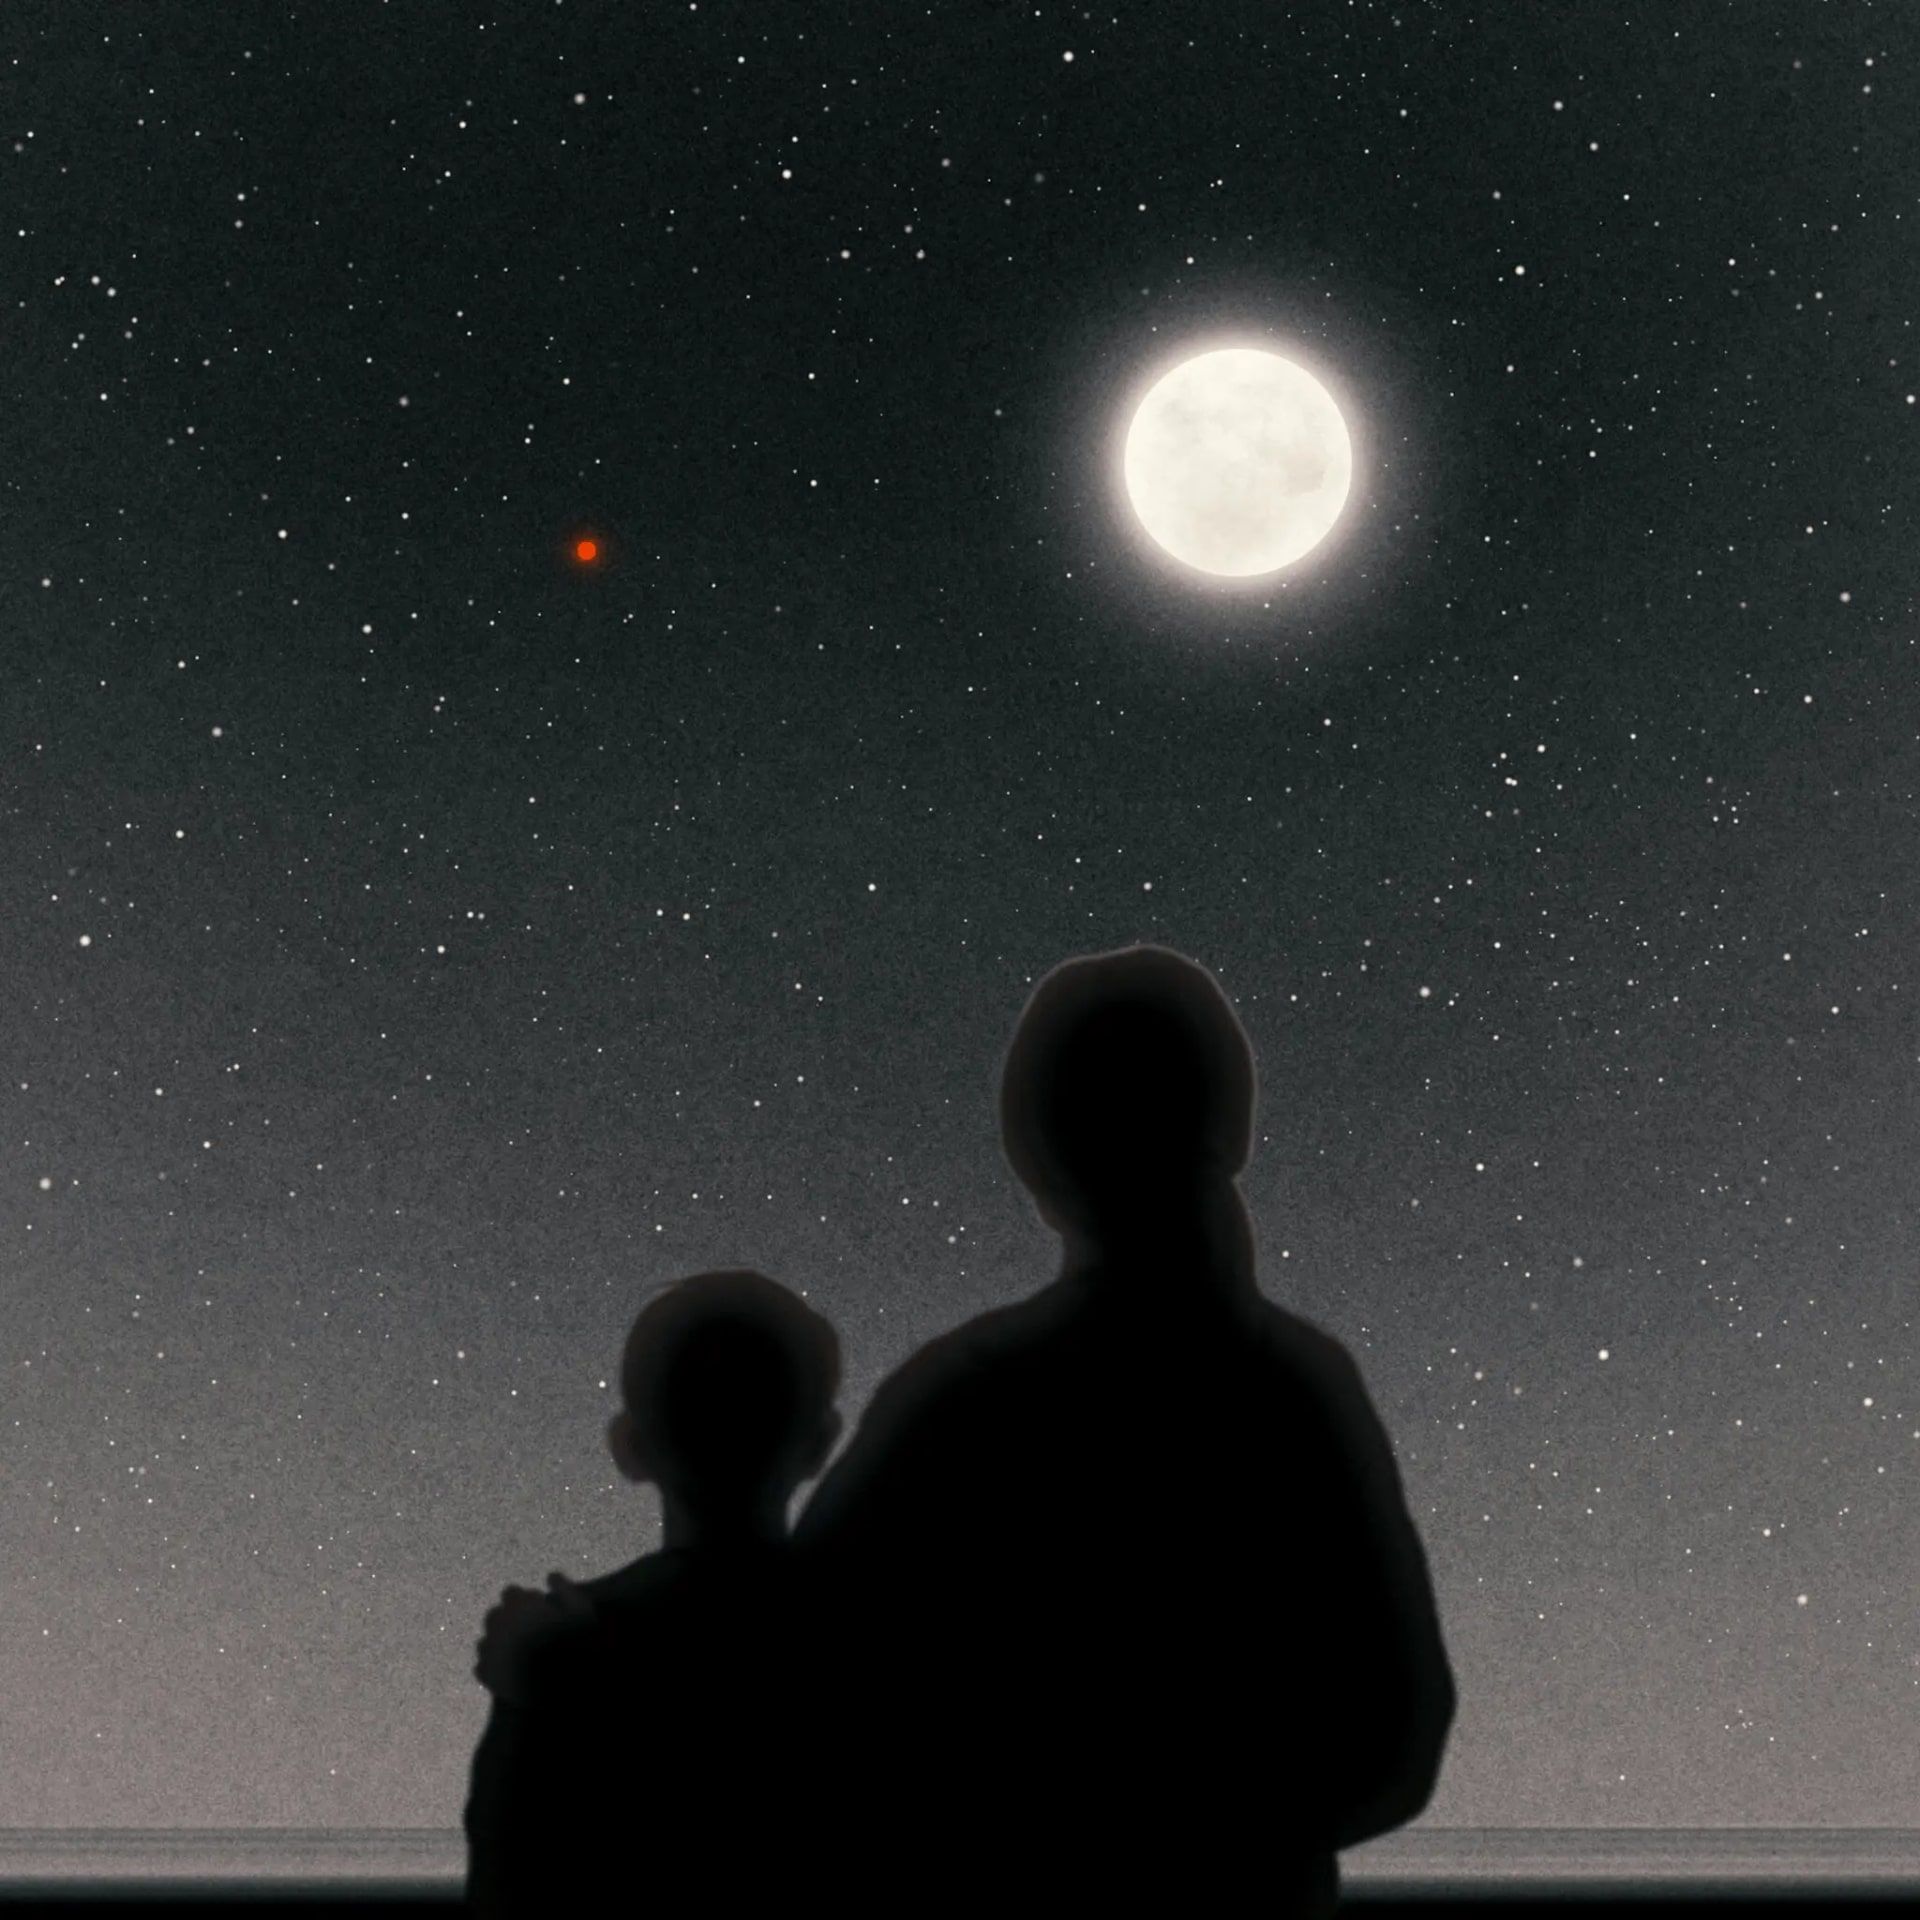 مادر و فرزند در حال تماشای ماه و مریخ در آسمان شب